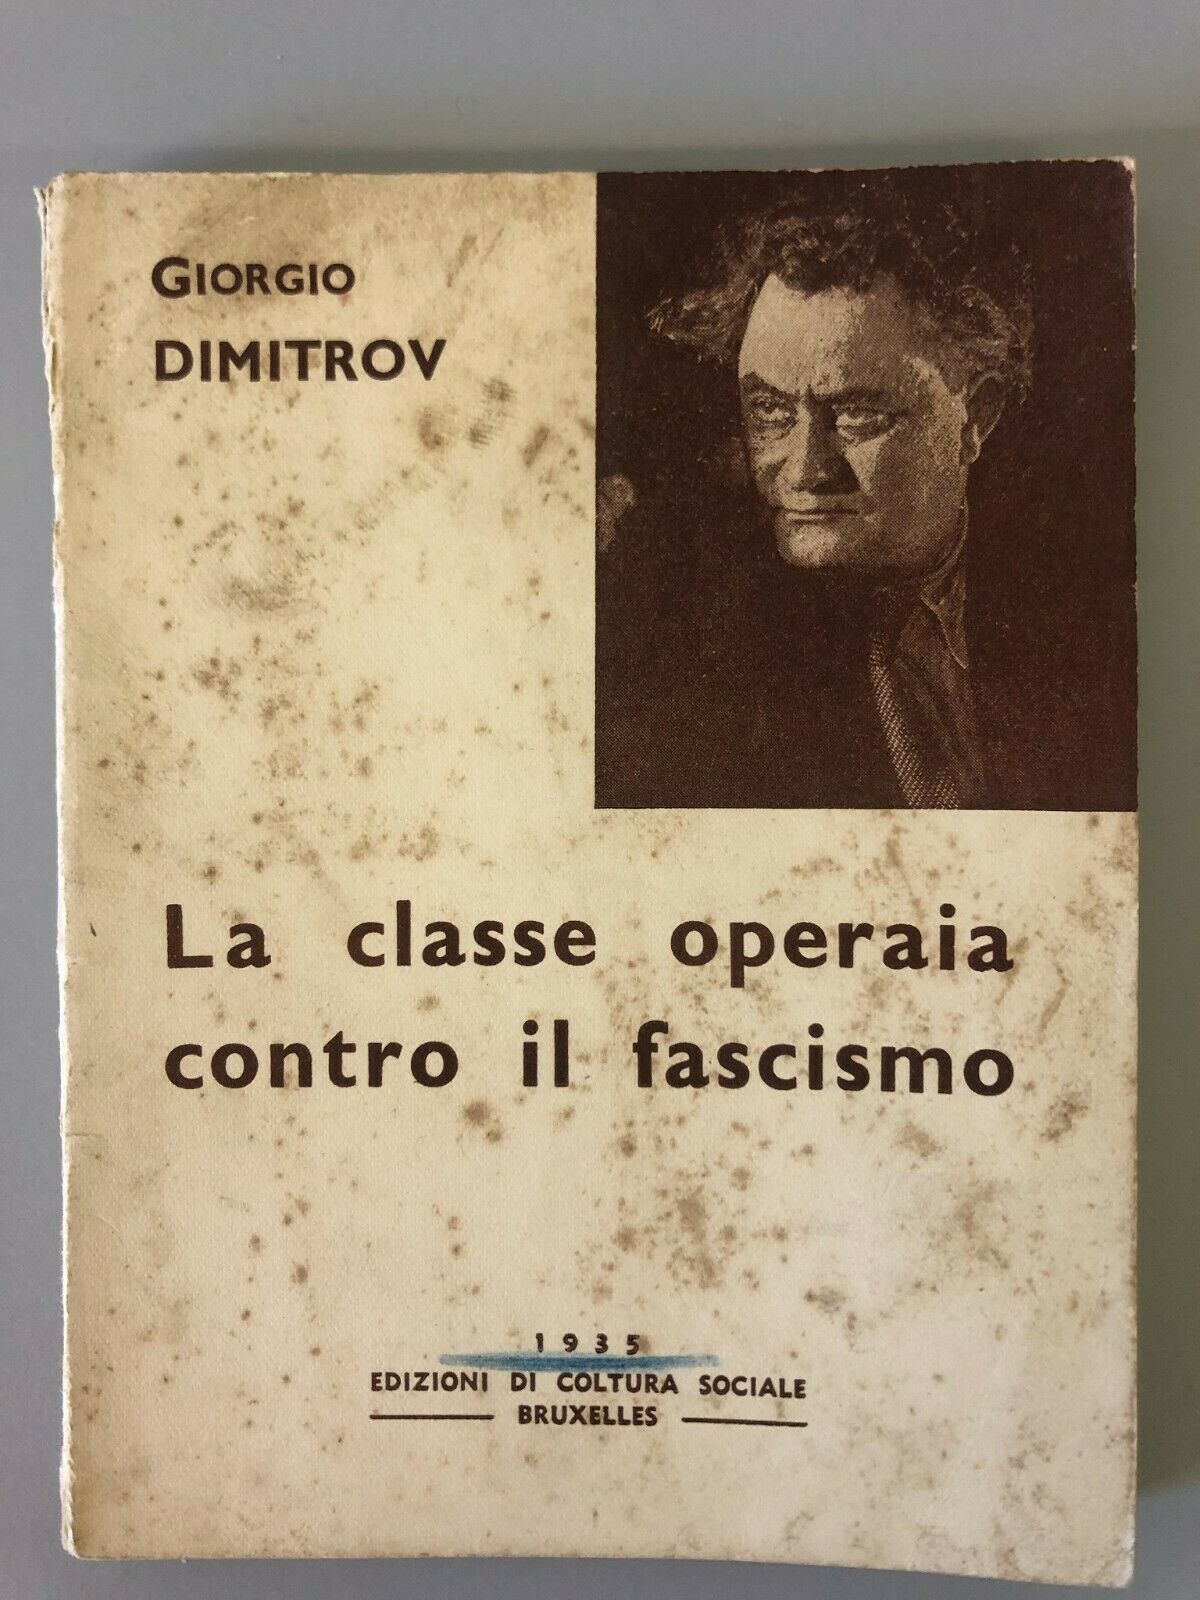 Rarissimo libro Giorgio Dimitrov La classe operaia contro il fascismo 1935